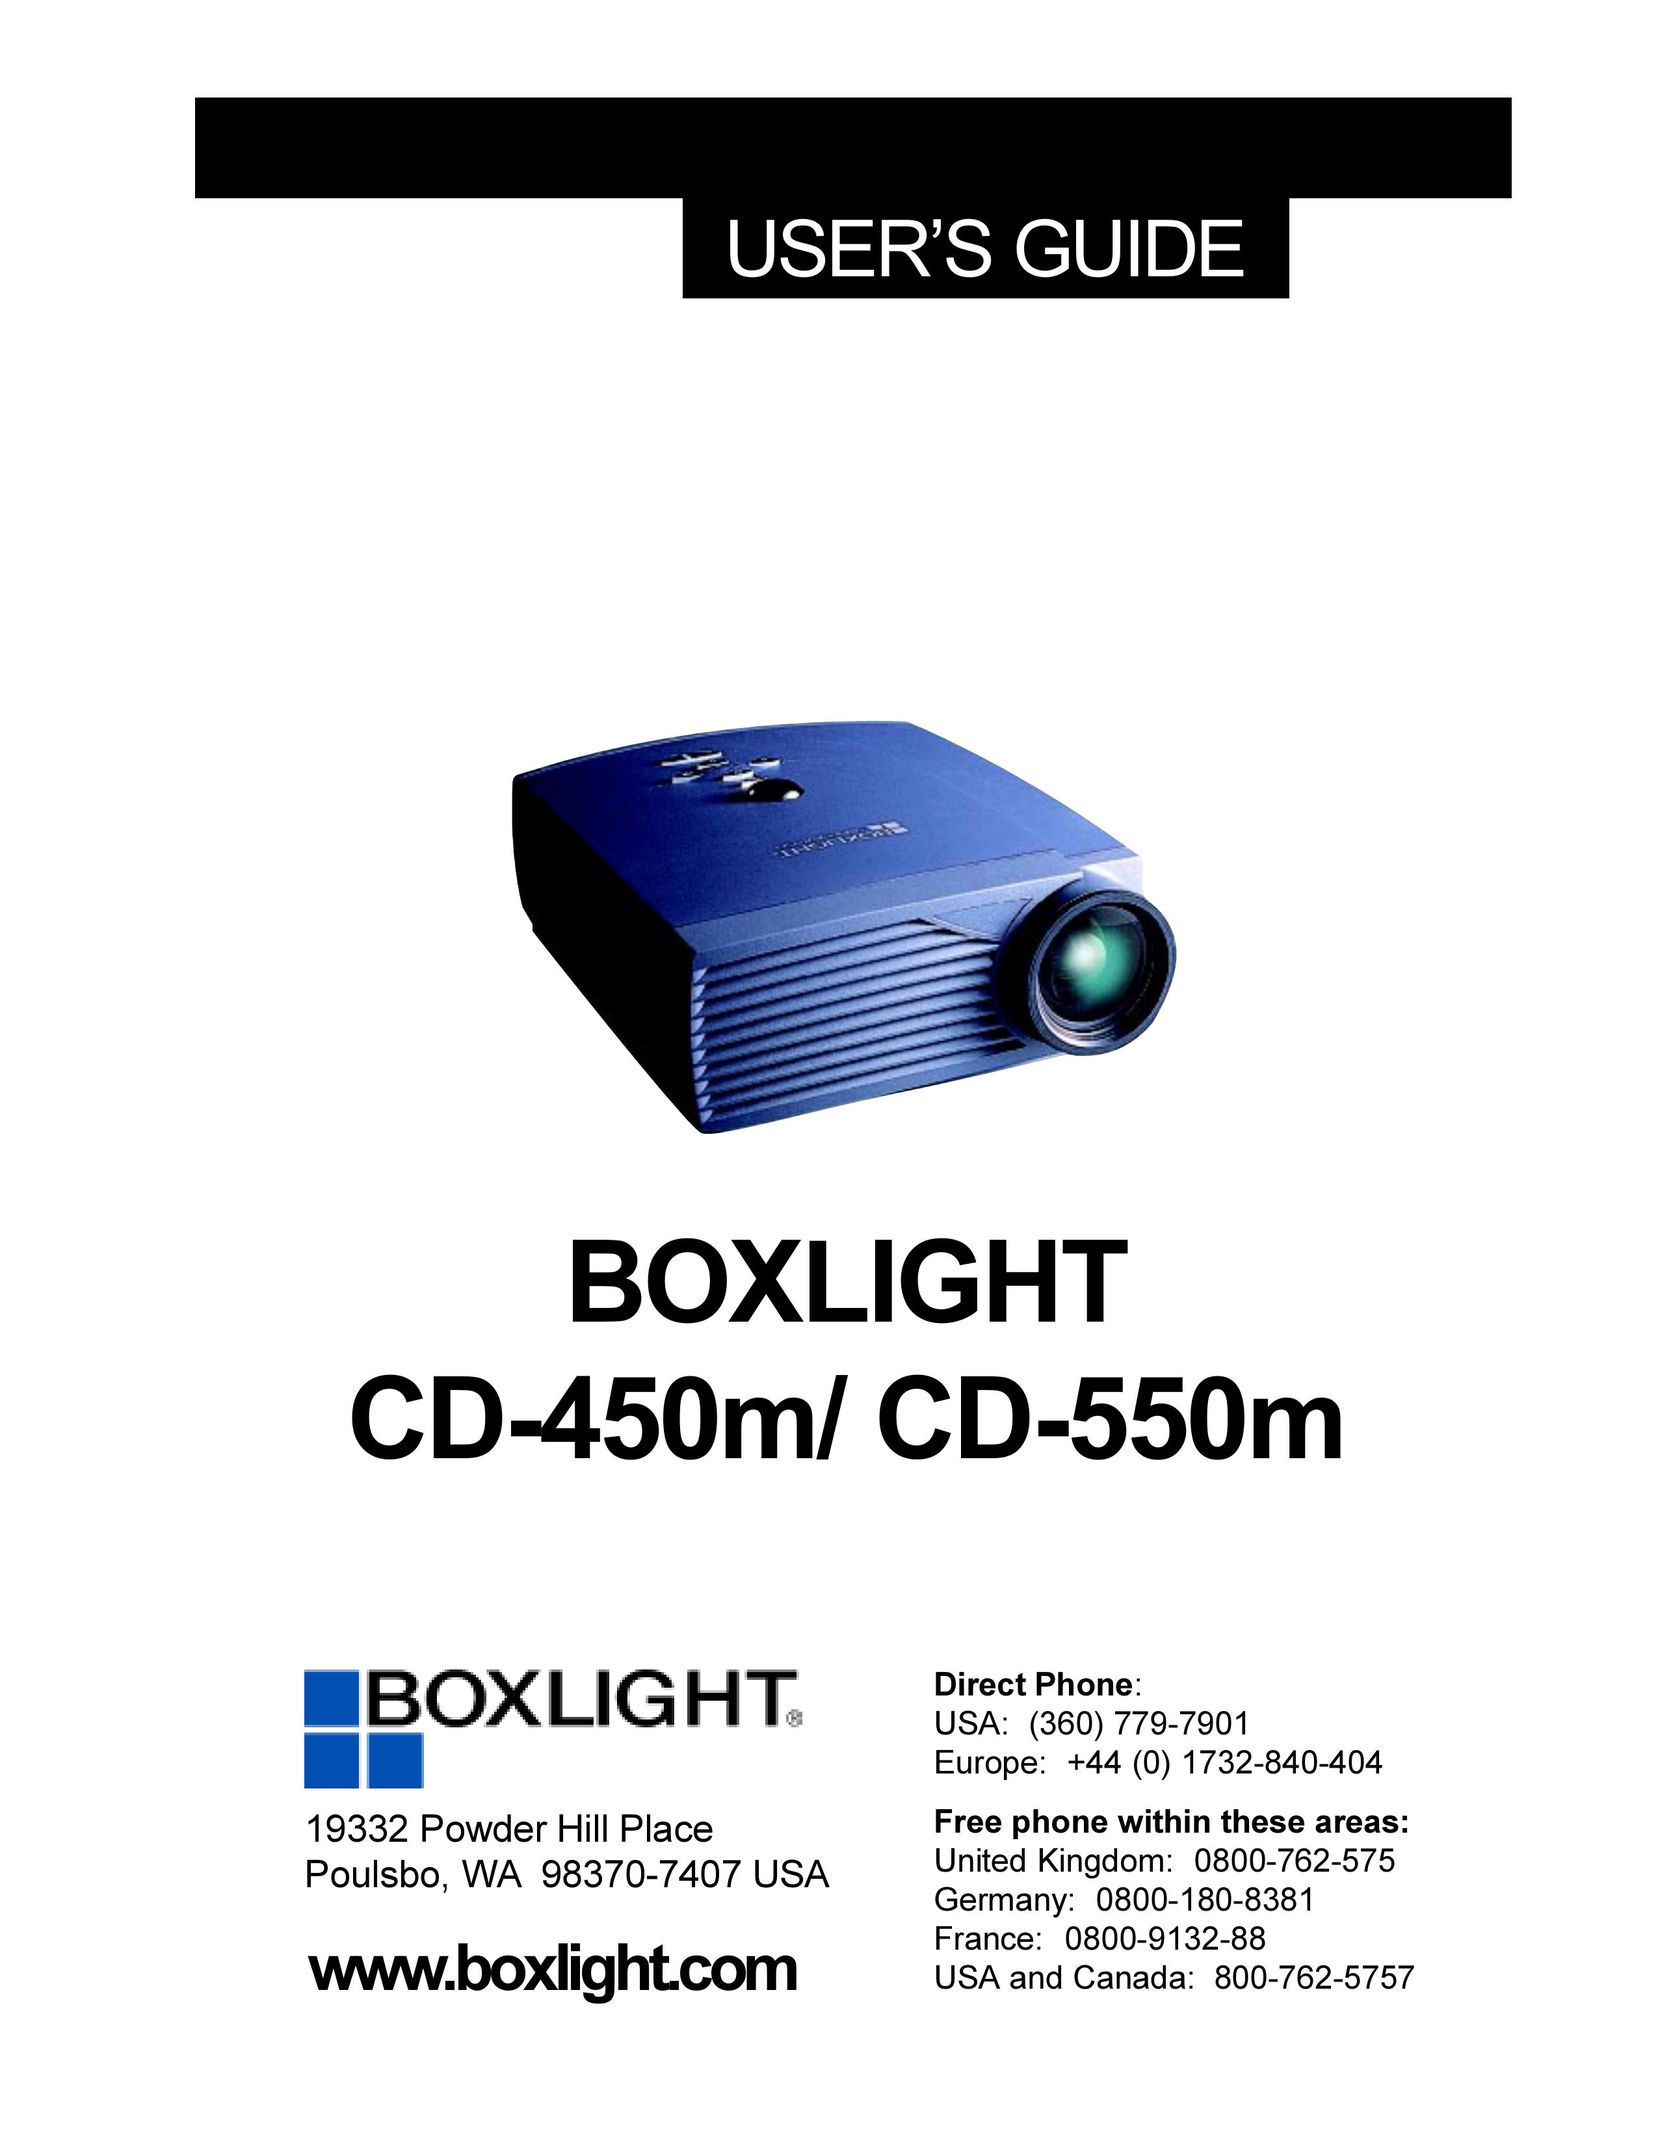 BOXLIGHT CD-450m Projector User Manual